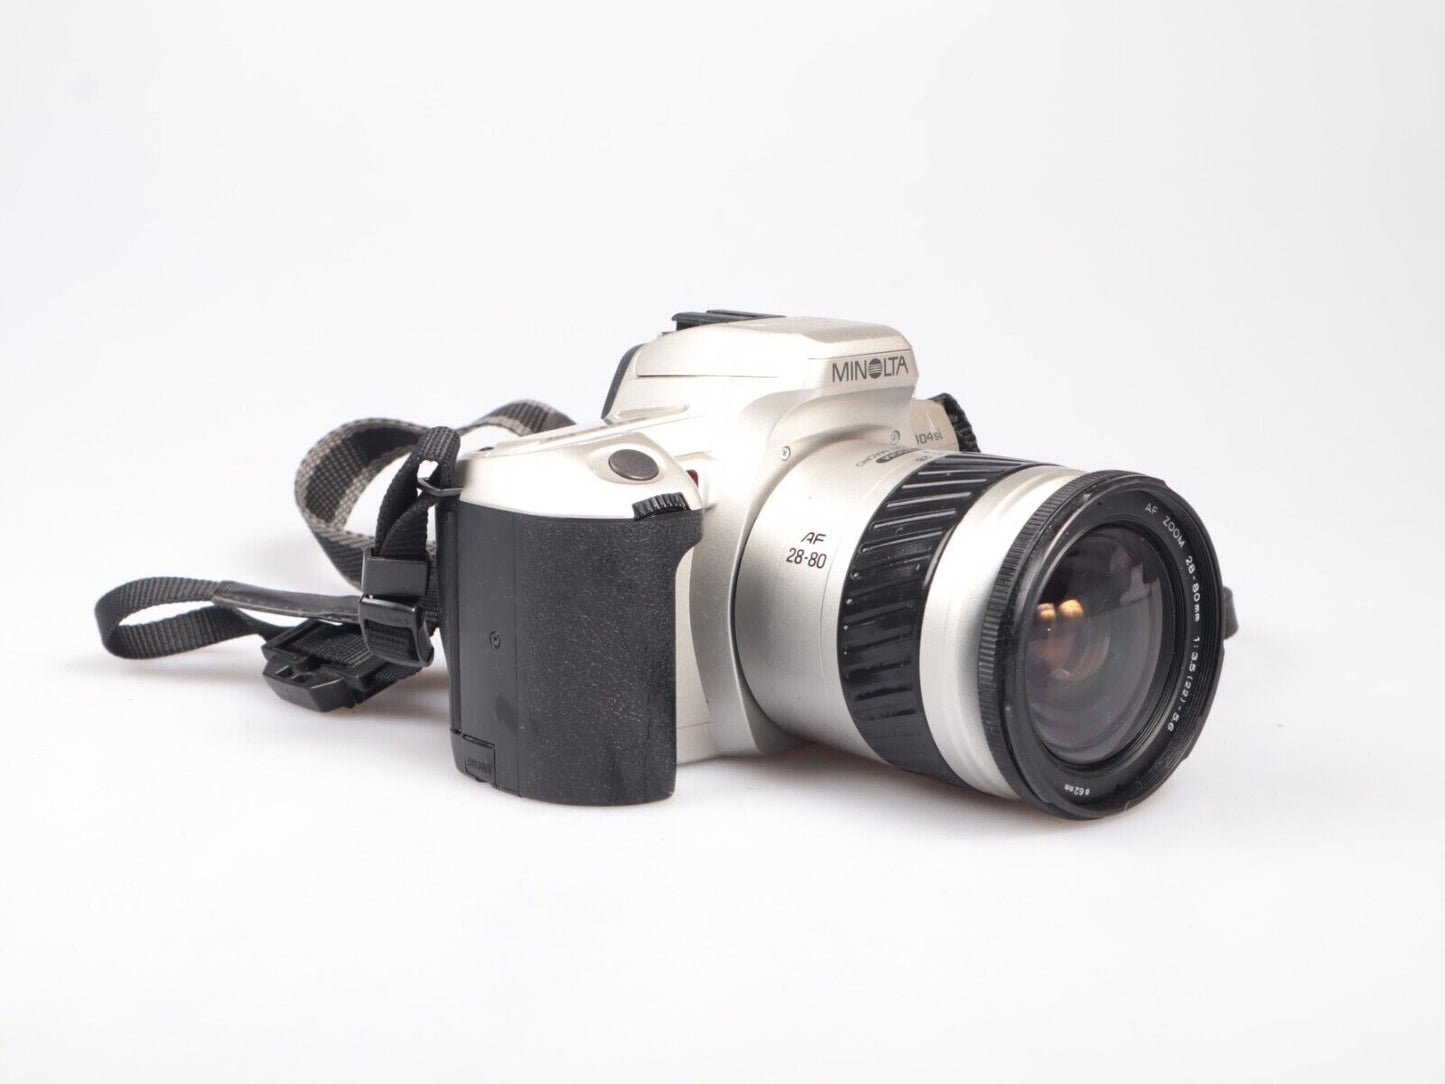 Minolta Dynax 404si | 35mm SLR Film Camera | 28-80mm f3.5-5.6 Macro